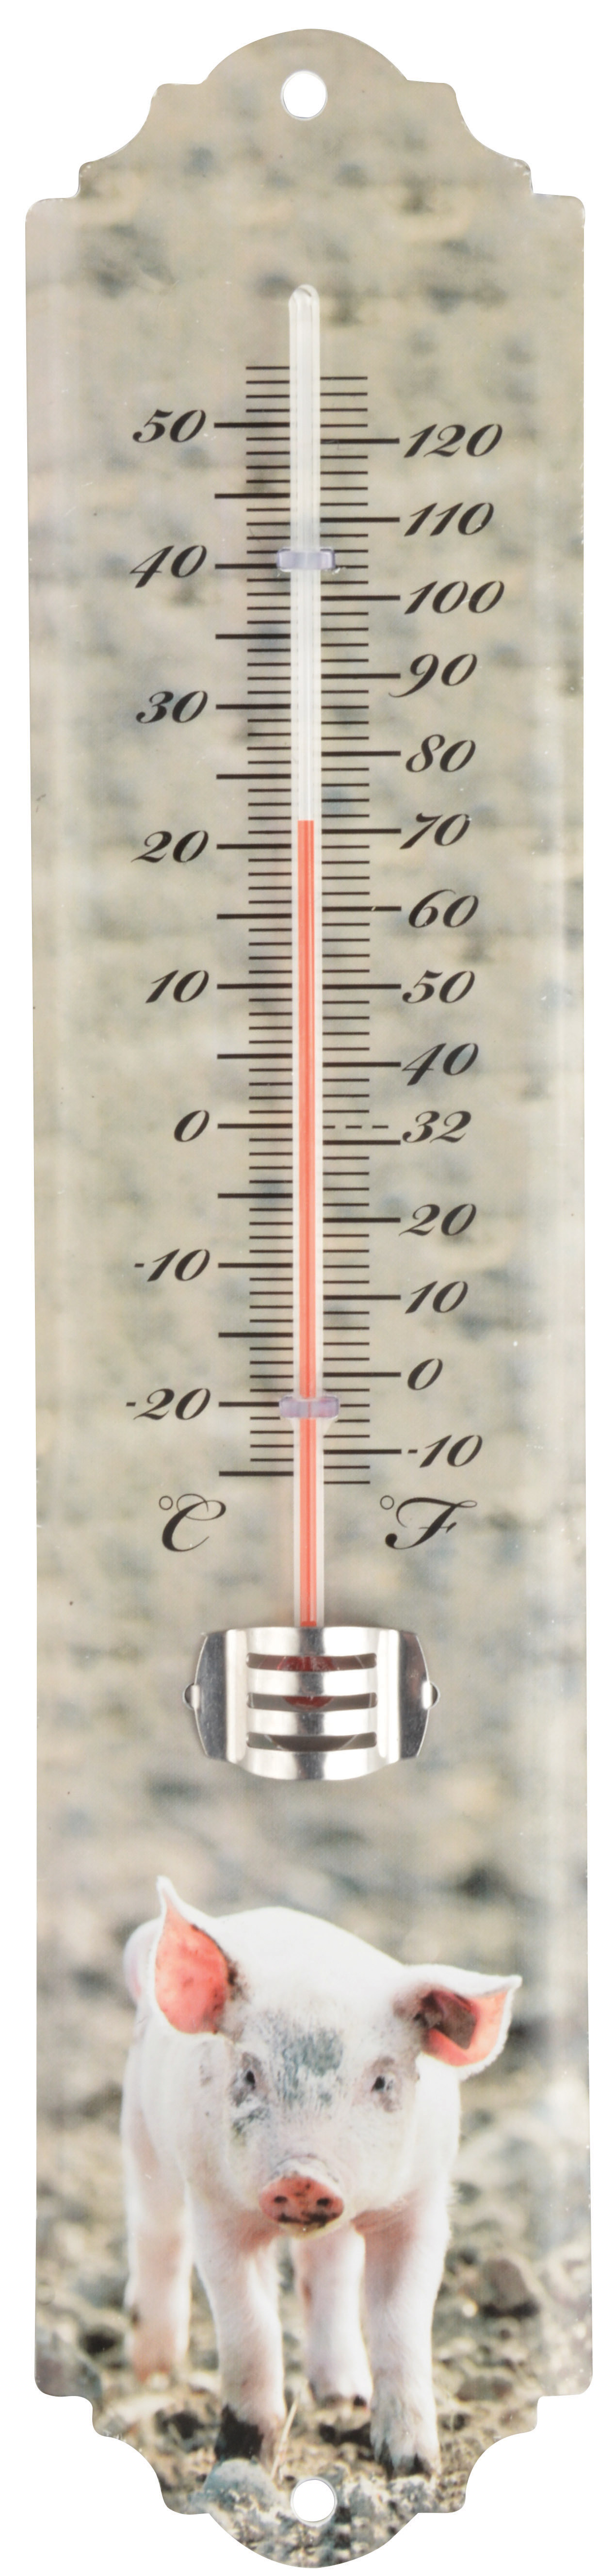 Thermomètre animaux de la ferme 6,8x1,3x29,6 cm : Autour de la